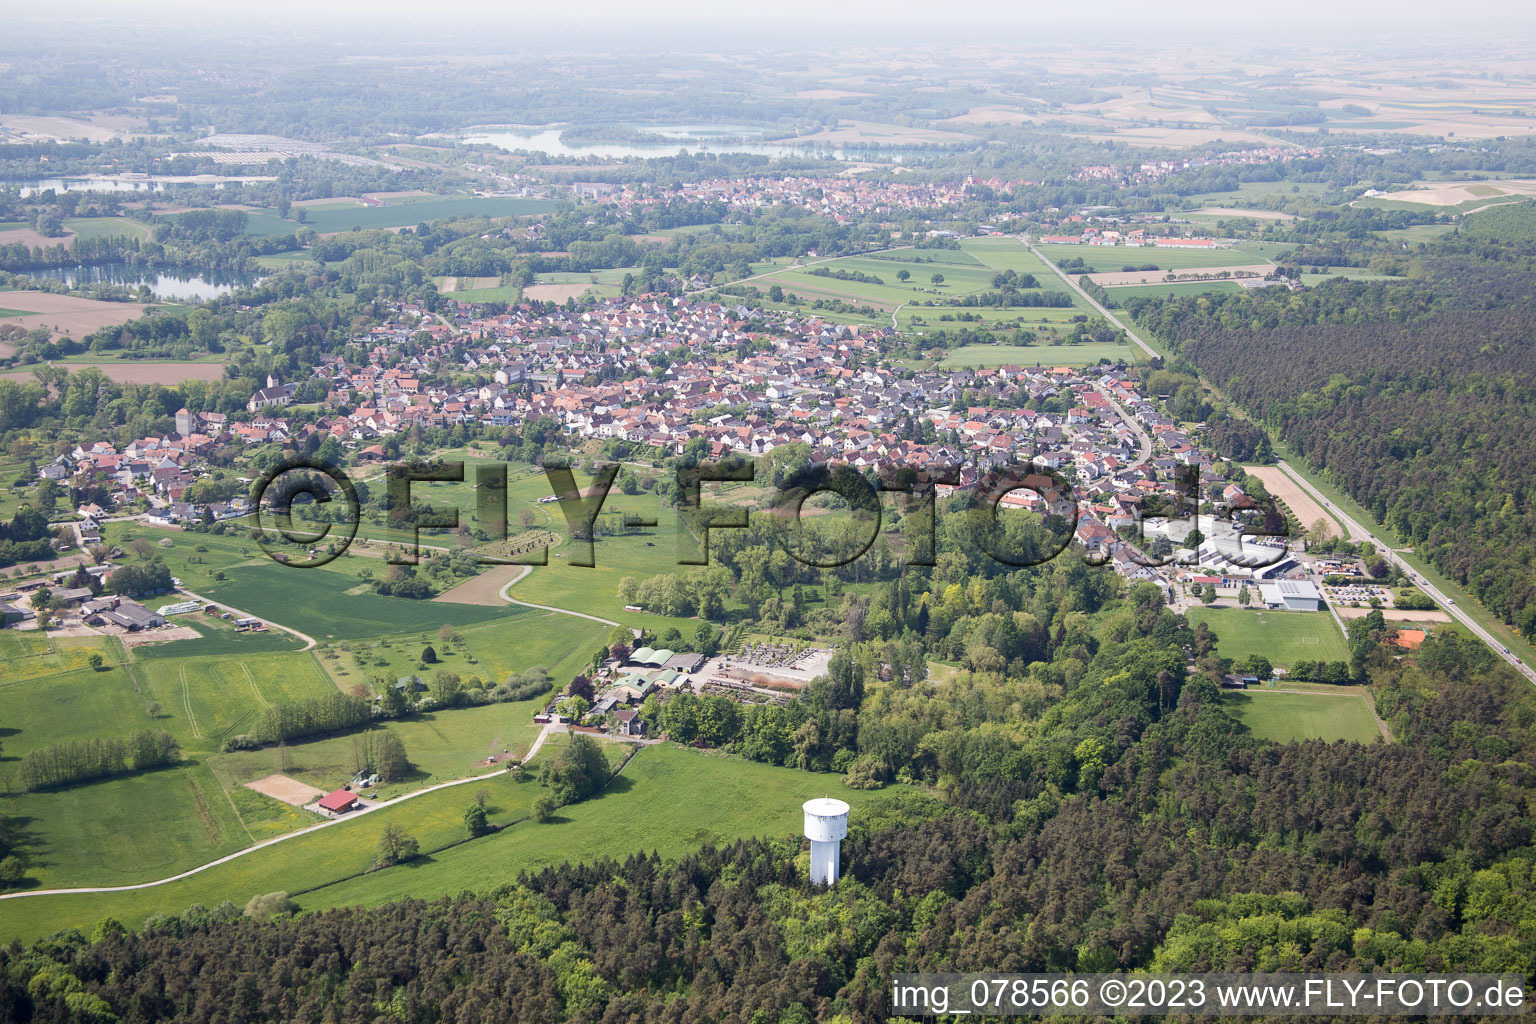 Berg im Bundesland Rheinland-Pfalz, Deutschland aus der Luft betrachtet